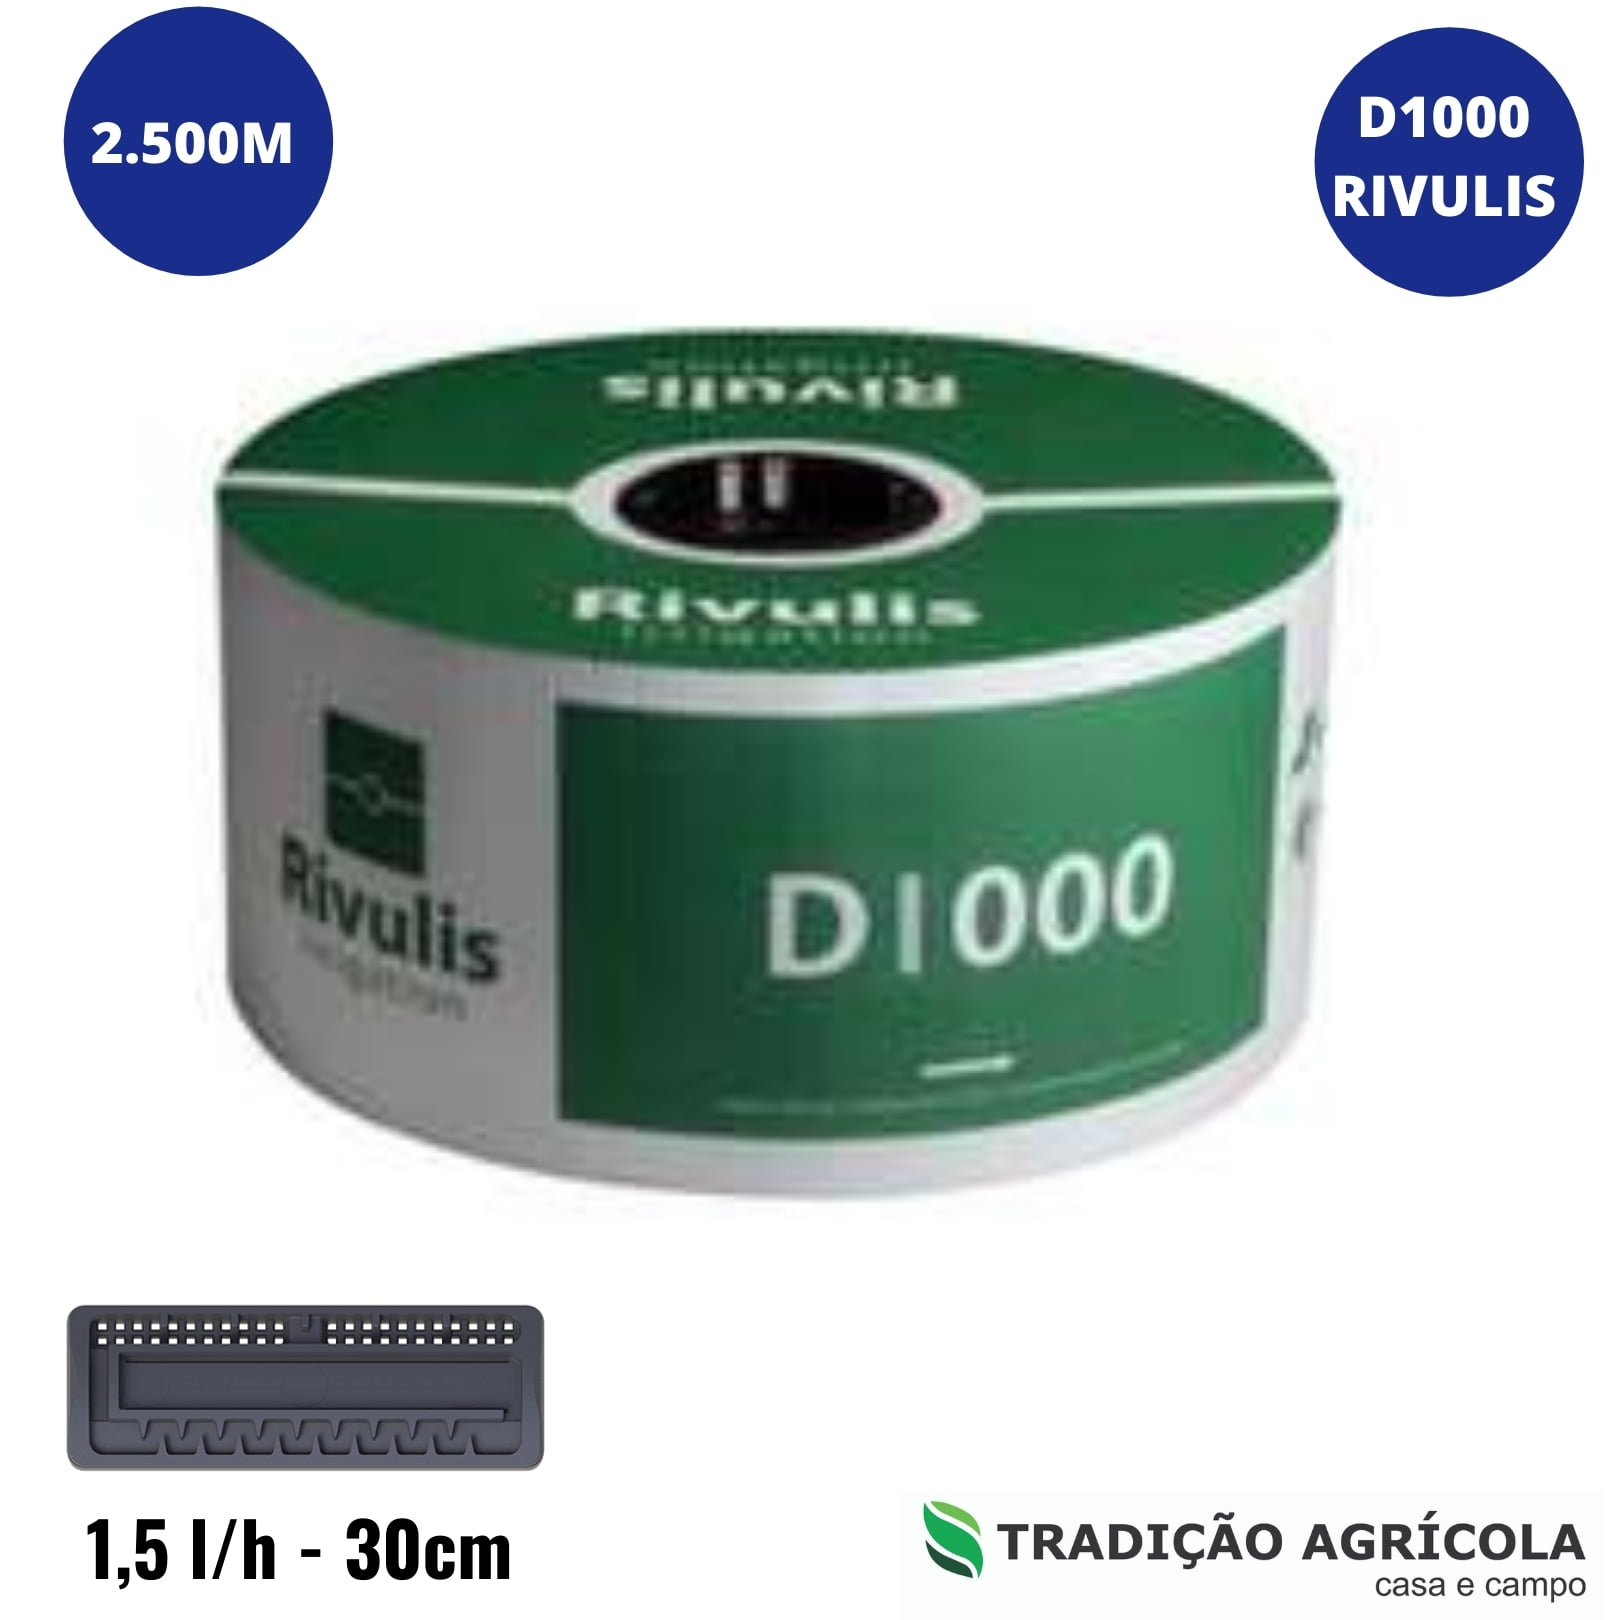 MANGUEIRA DE IRRIGAÇÃO POR GOTEJAMENTO RIVULIS D1000 1,5L/H - 0,30M (2.500M)